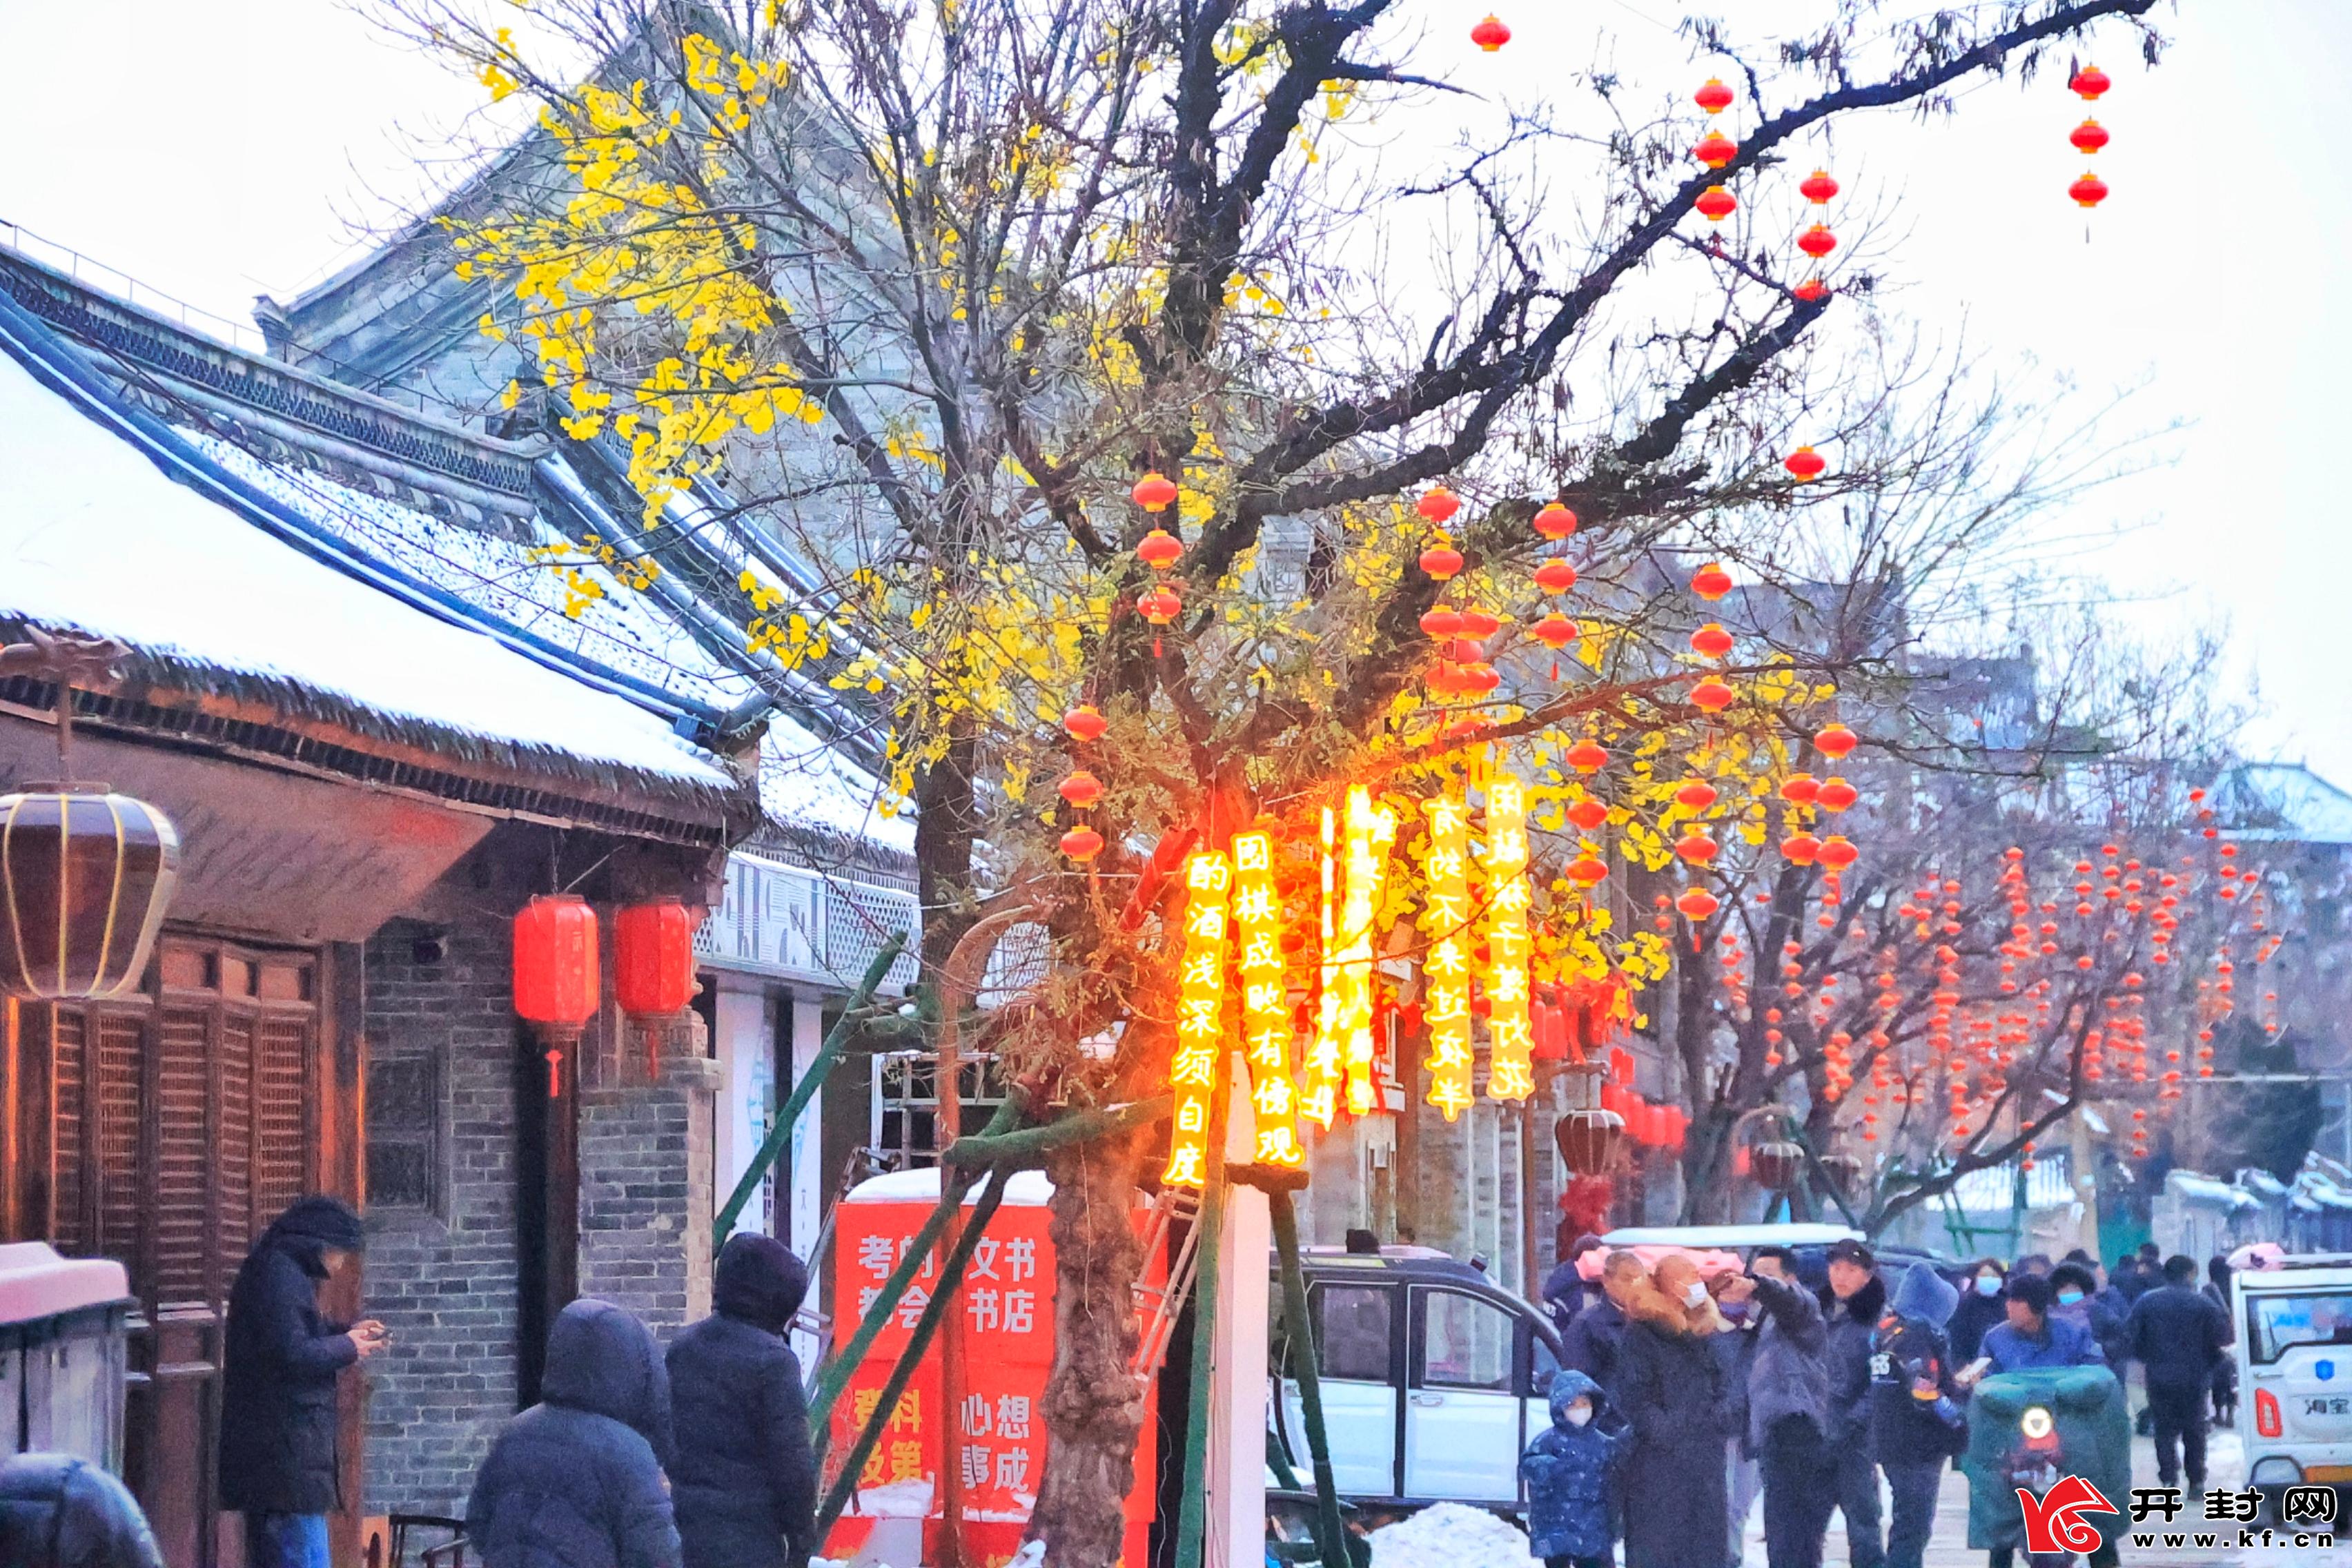 古色古香的双龙巷在残雪与红灯笼的衬托下更显韵味，让人流连忘返。开封+记者李浩12月18日摄